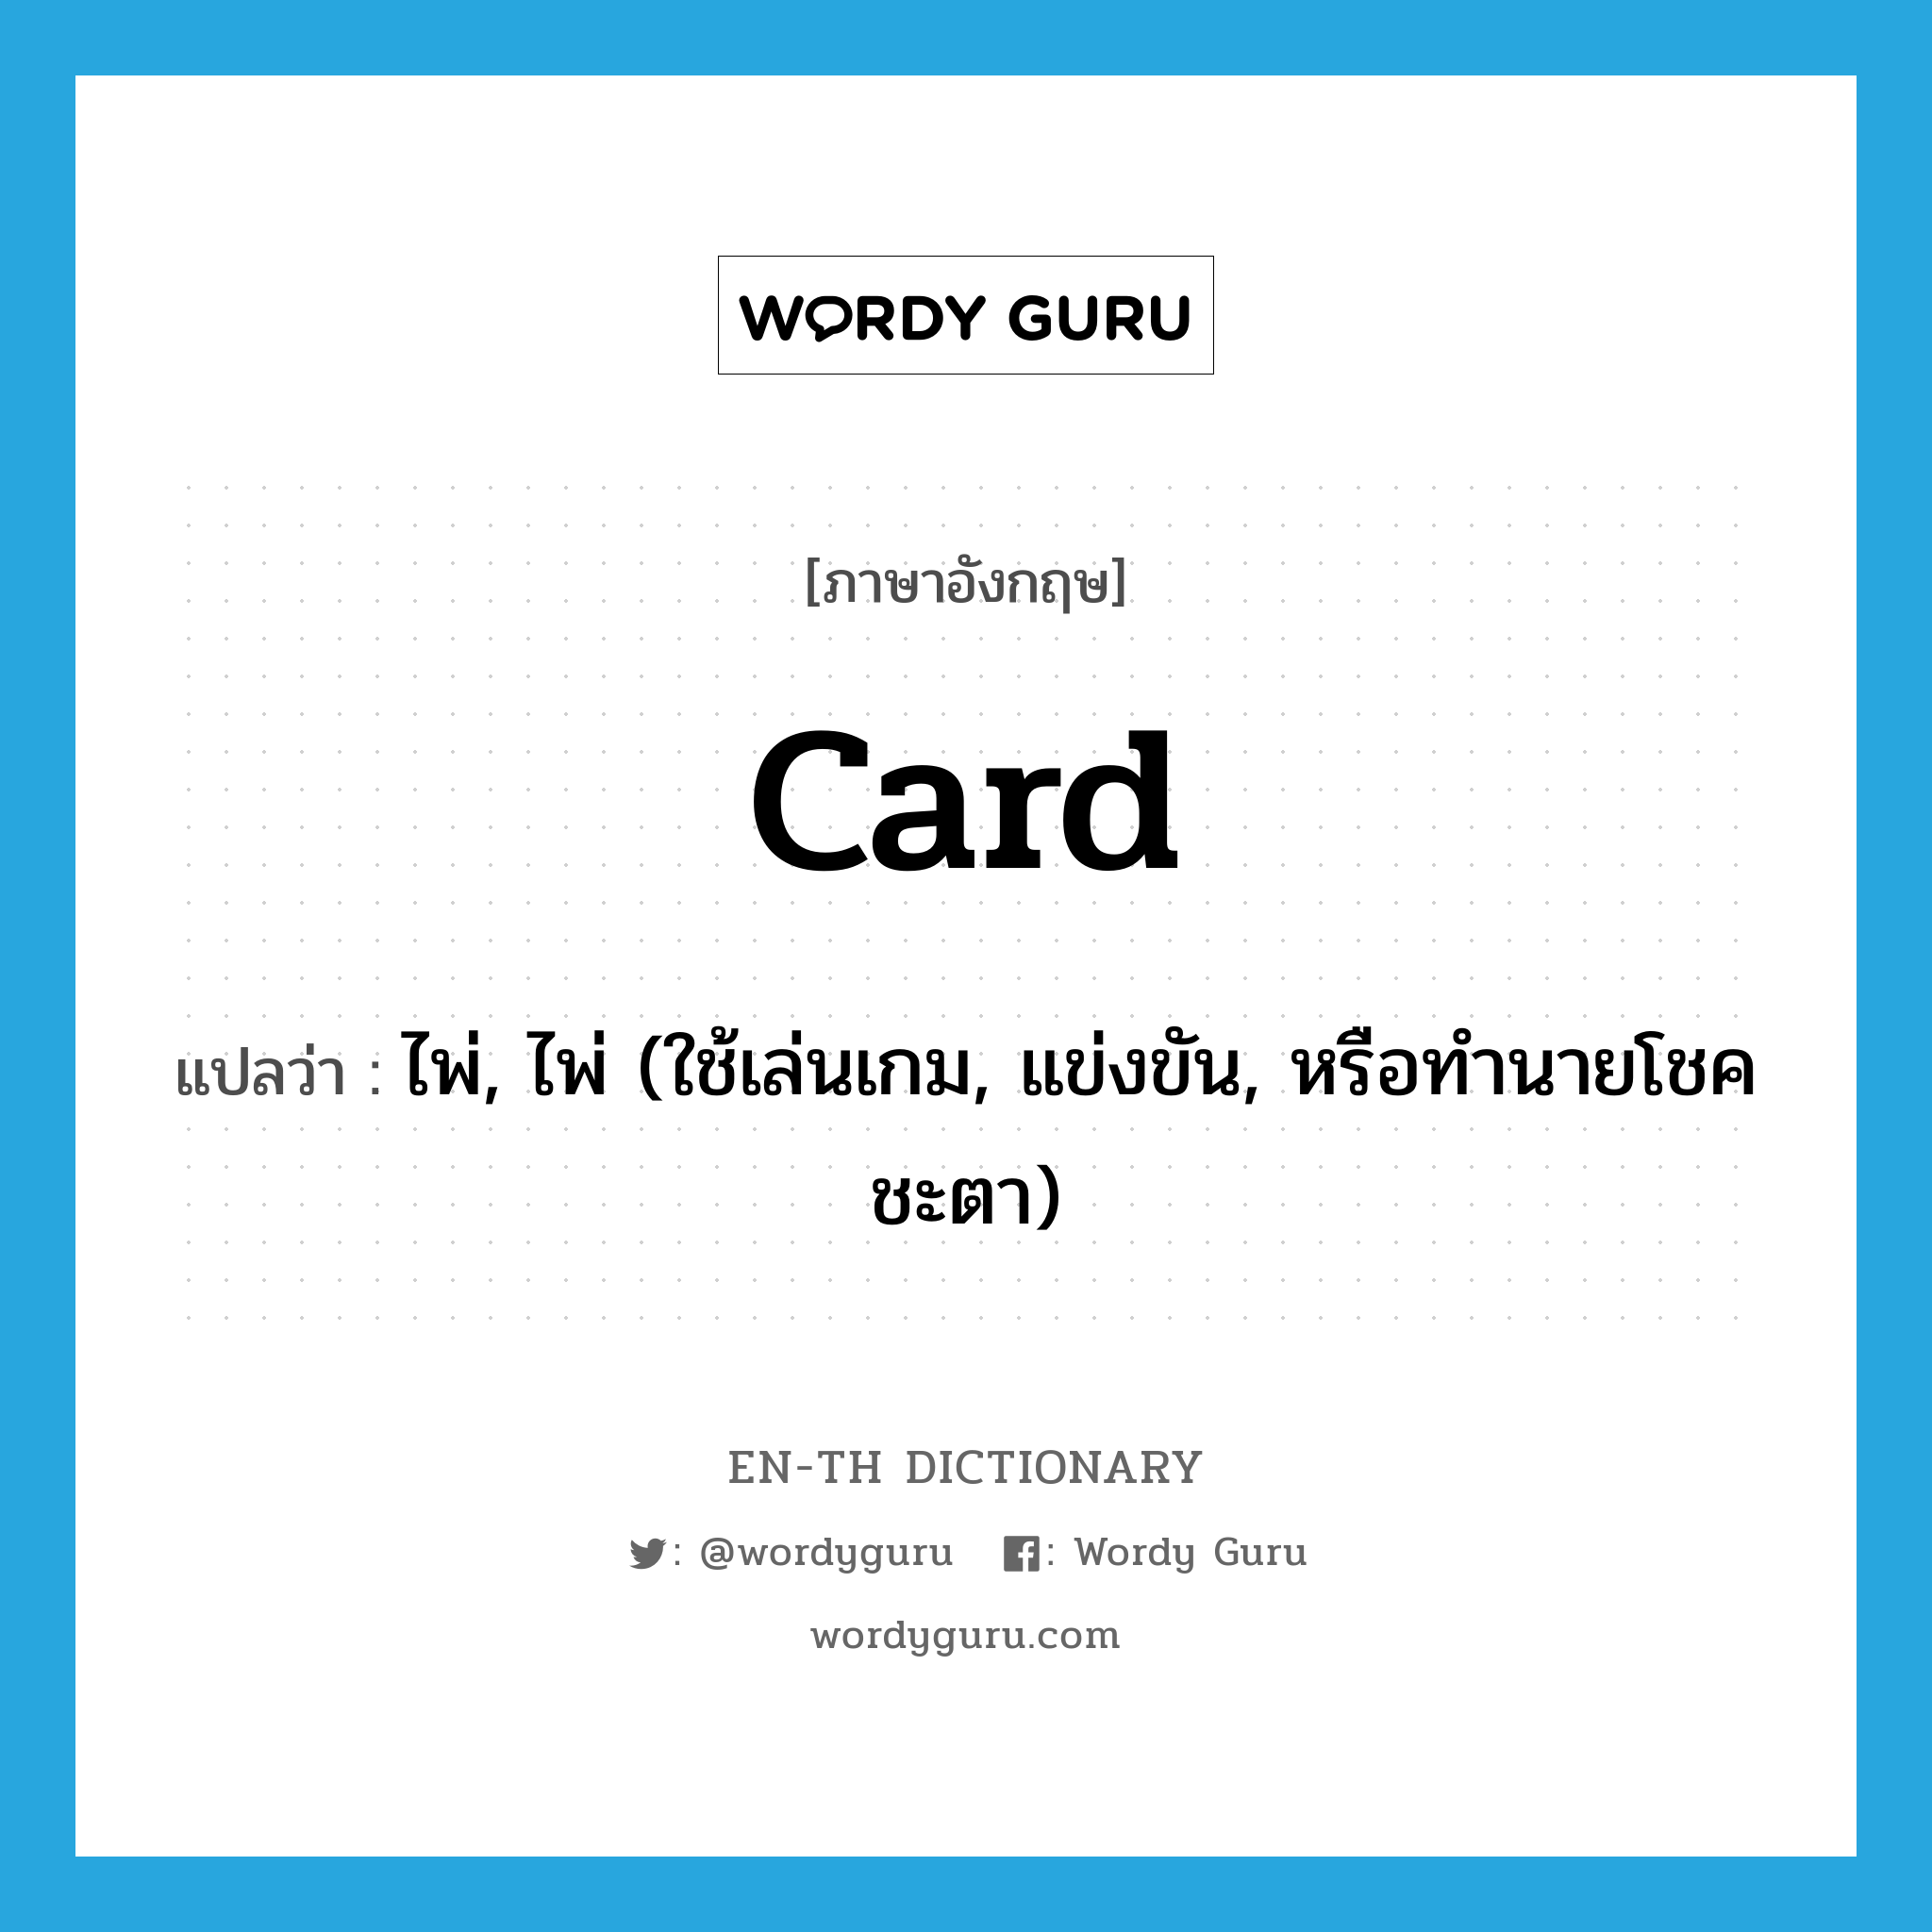 card แปลว่า?, คำศัพท์ภาษาอังกฤษ card แปลว่า ไพ่, ไพ่ (ใช้เล่นเกม, แข่งขัน, หรือทำนายโชคชะตา) ประเภท N หมวด N